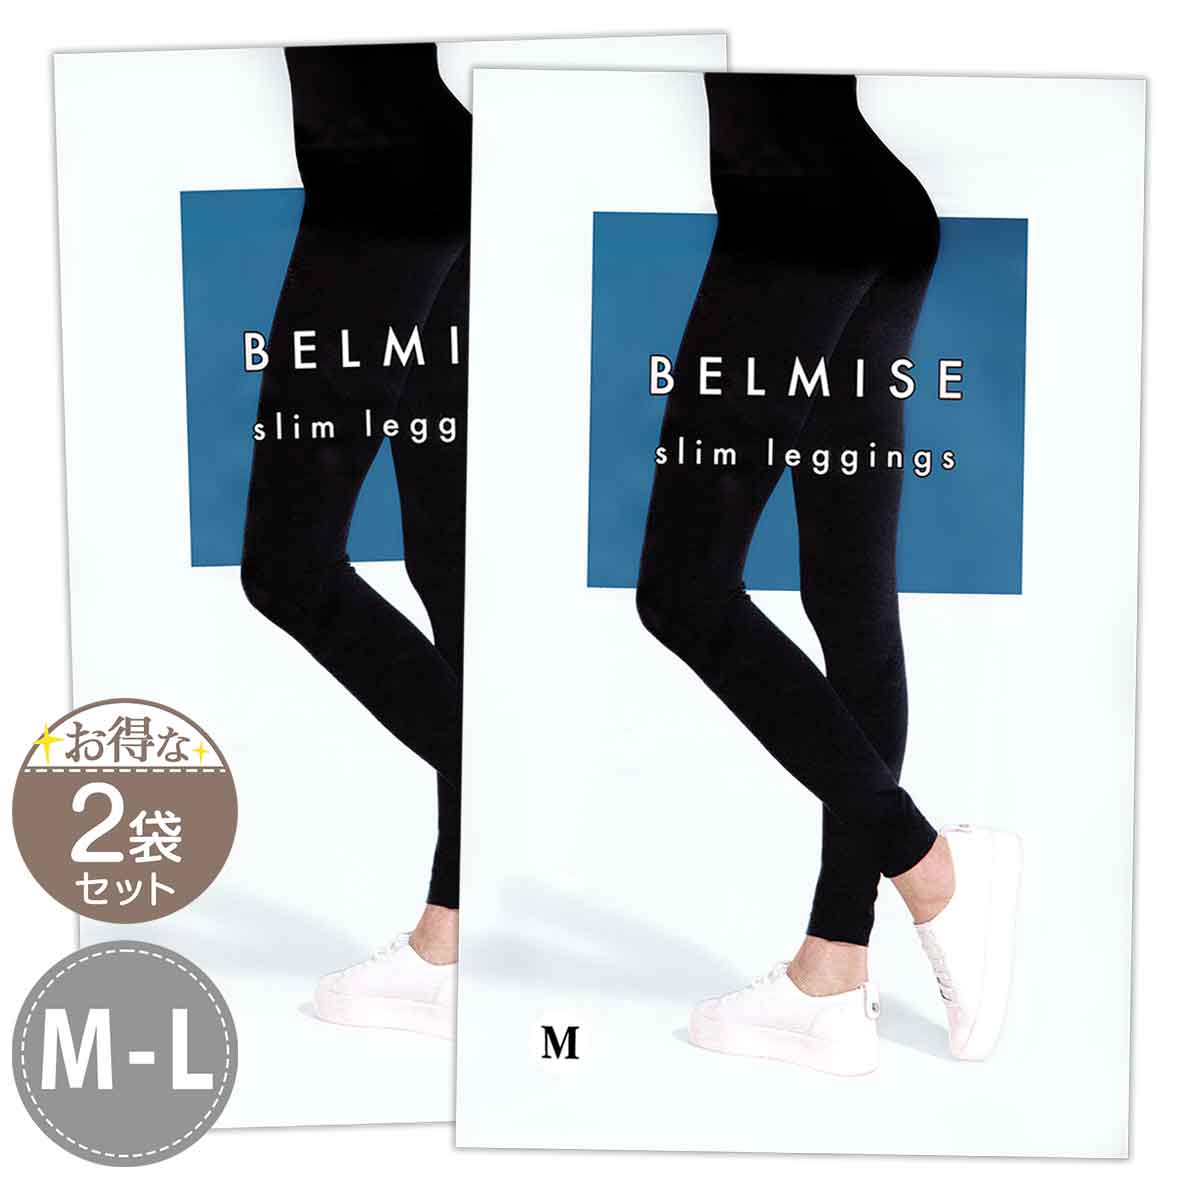 【 2袋セット 】 ベルミス スリムレギンス BELMISE Slim leggings M-Lサイズ Mサイズ Lサイズ メール便送料無料NYH / ベルミスレギンスMS05-05 / BMLGSM-02P